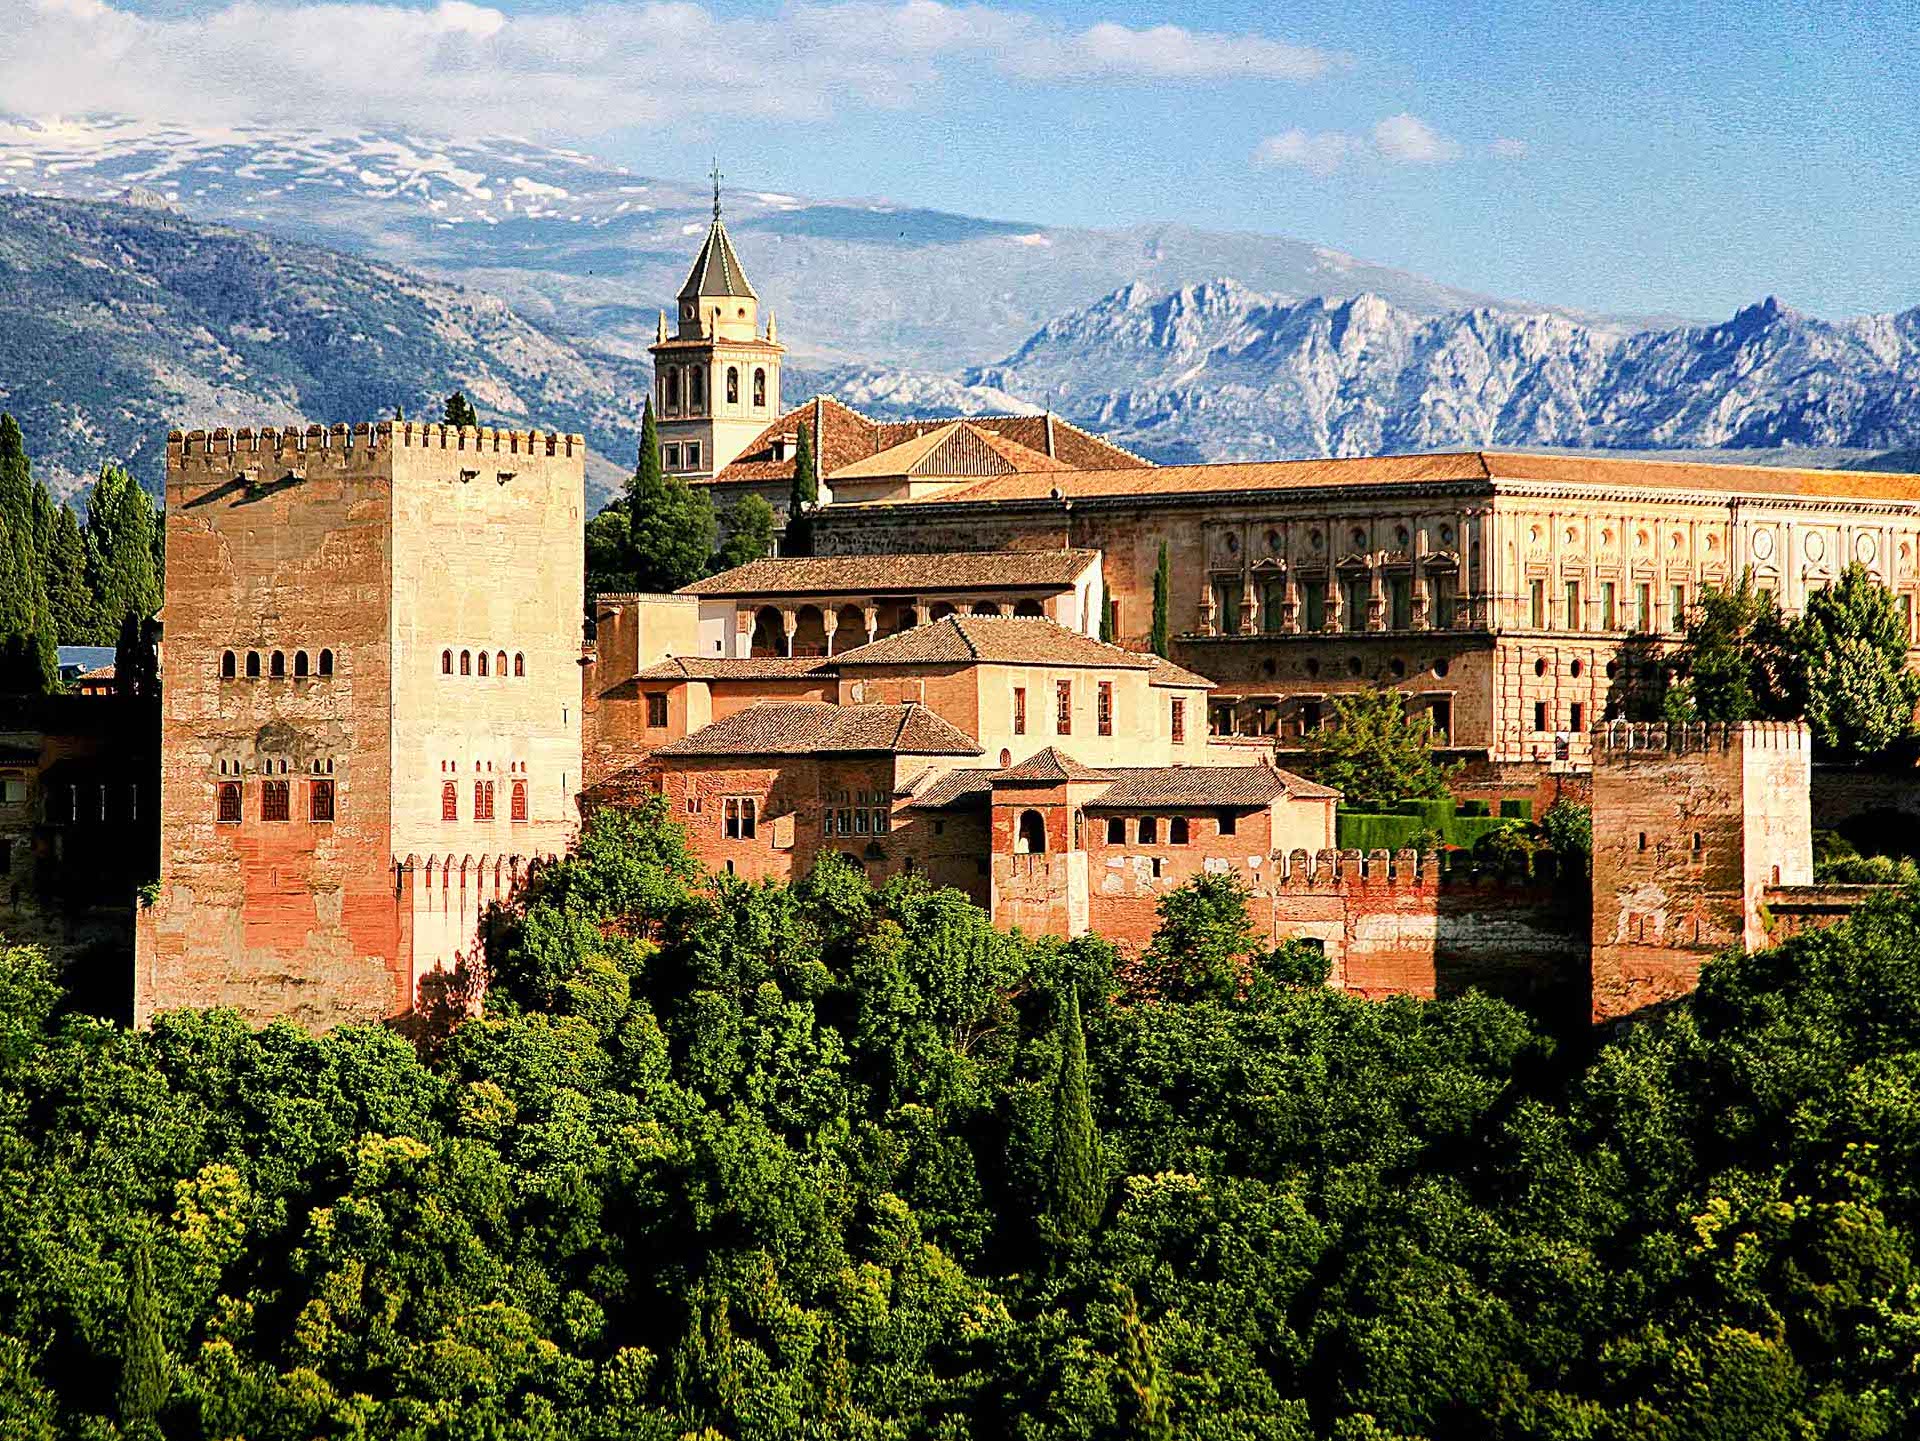 Visit the Alhambra - Hotel Palacio de Los Navas